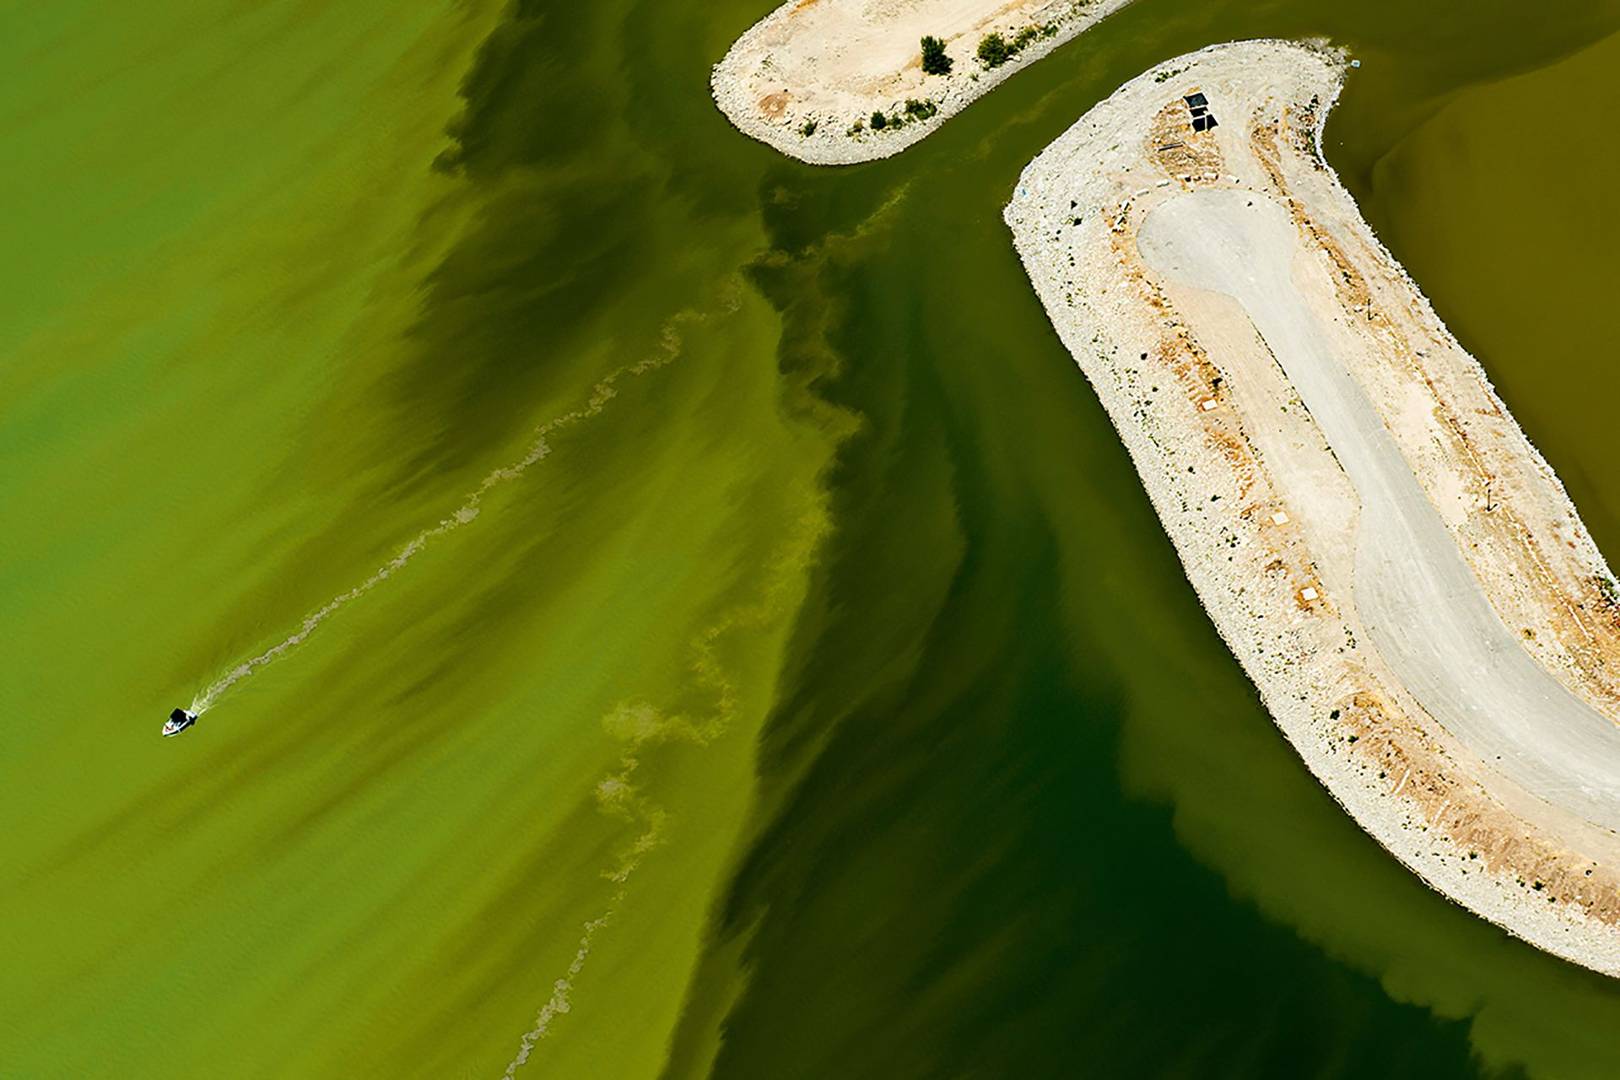 Utah Lake's algal bloom looks like a green slime attack WIRED UK